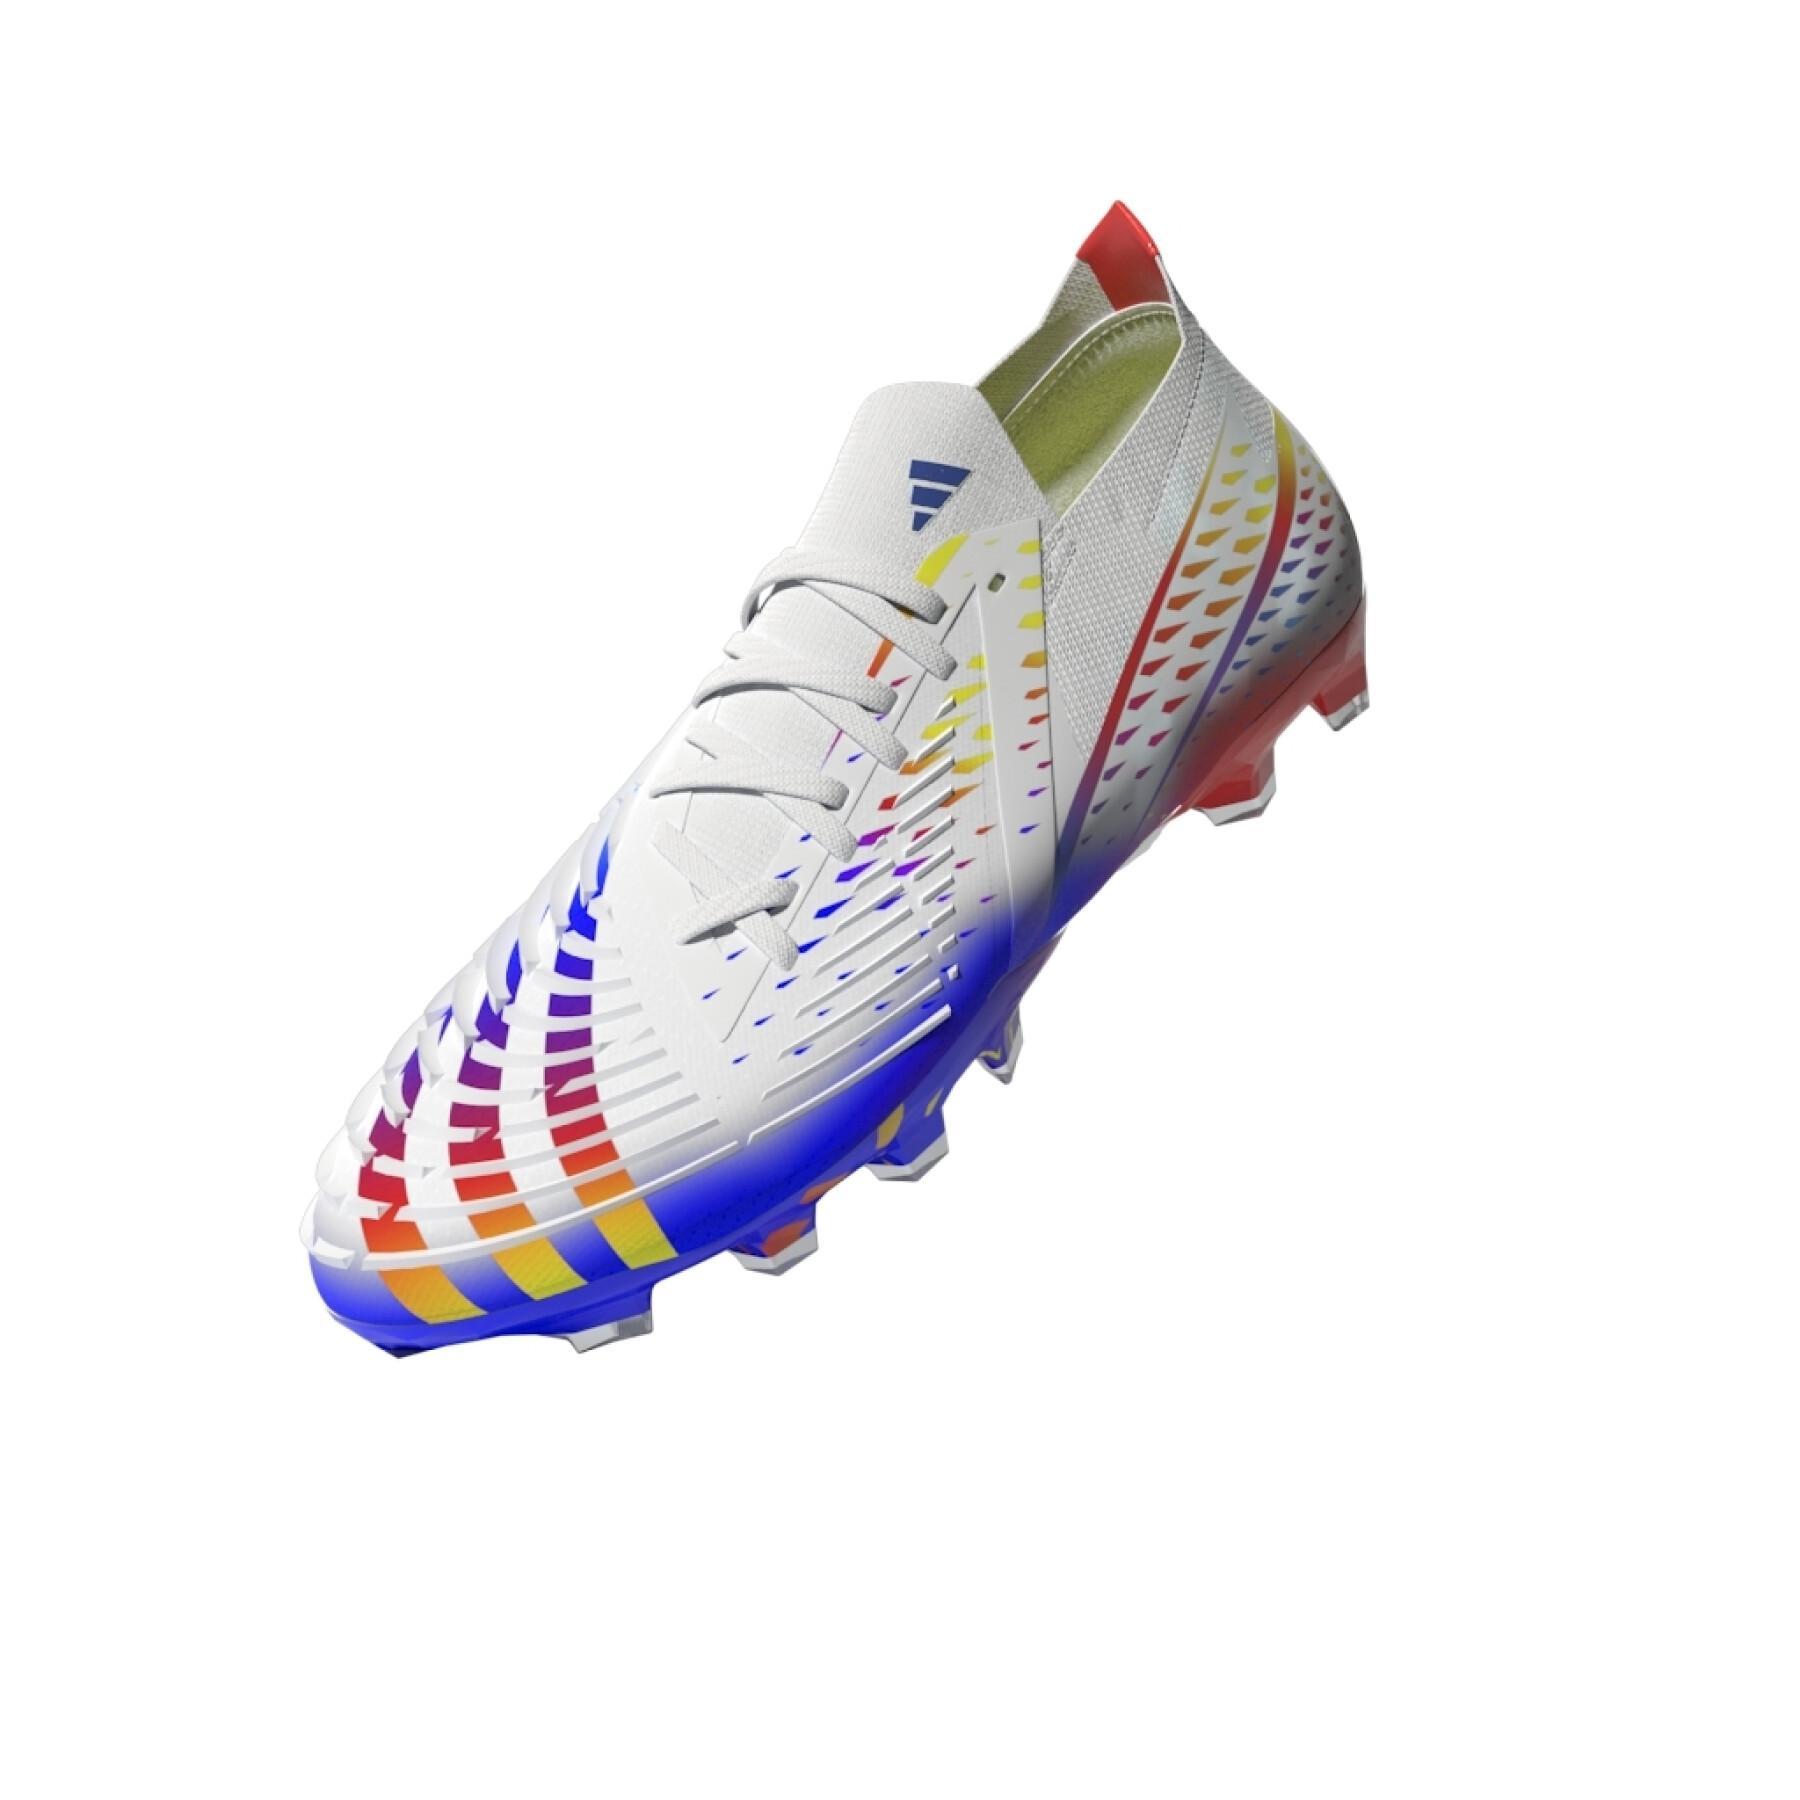 Botas de fútbol adidas Predator Edge.1 AG - Al Rihla